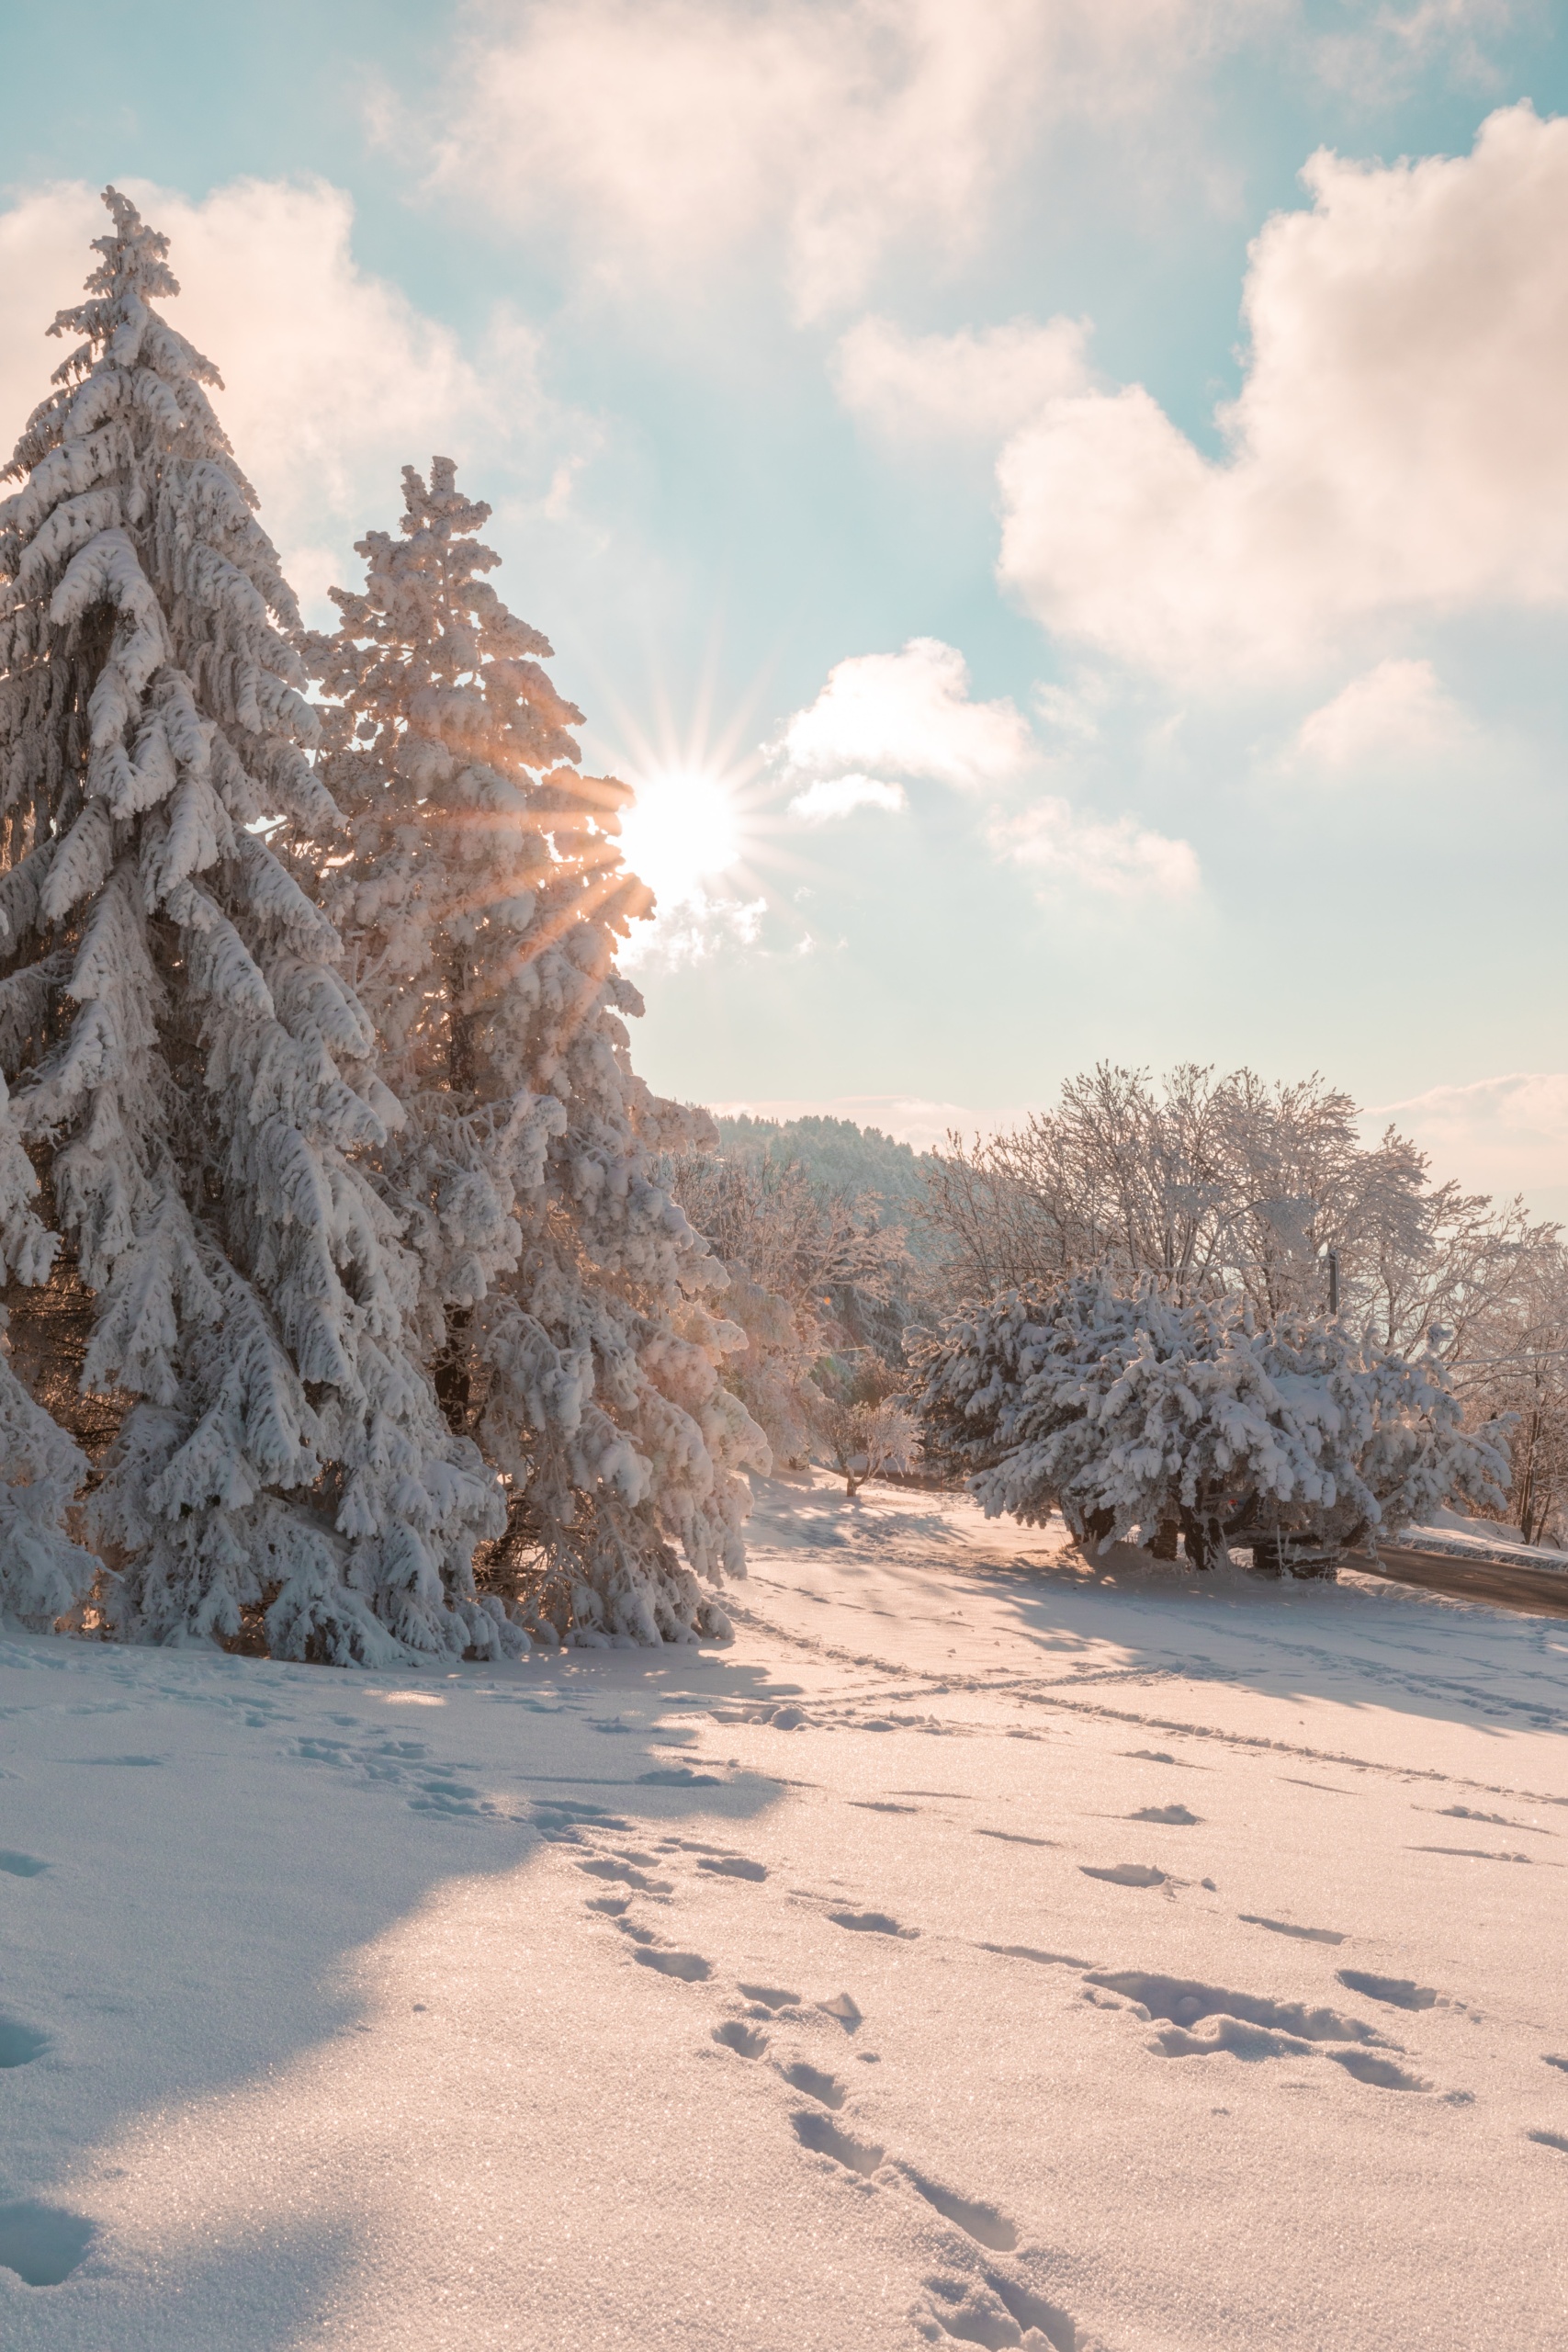 Khám phá những hình nền mùa đông đầy thẩm mỹ với màu be ấm áp và tuyết trắng đẹp như tranh vẽ. Cảnh tượng thú vị này sẽ mang đến bạn những giây phút thư giãn và cảm nhận sự huyền bí của mùa đông.